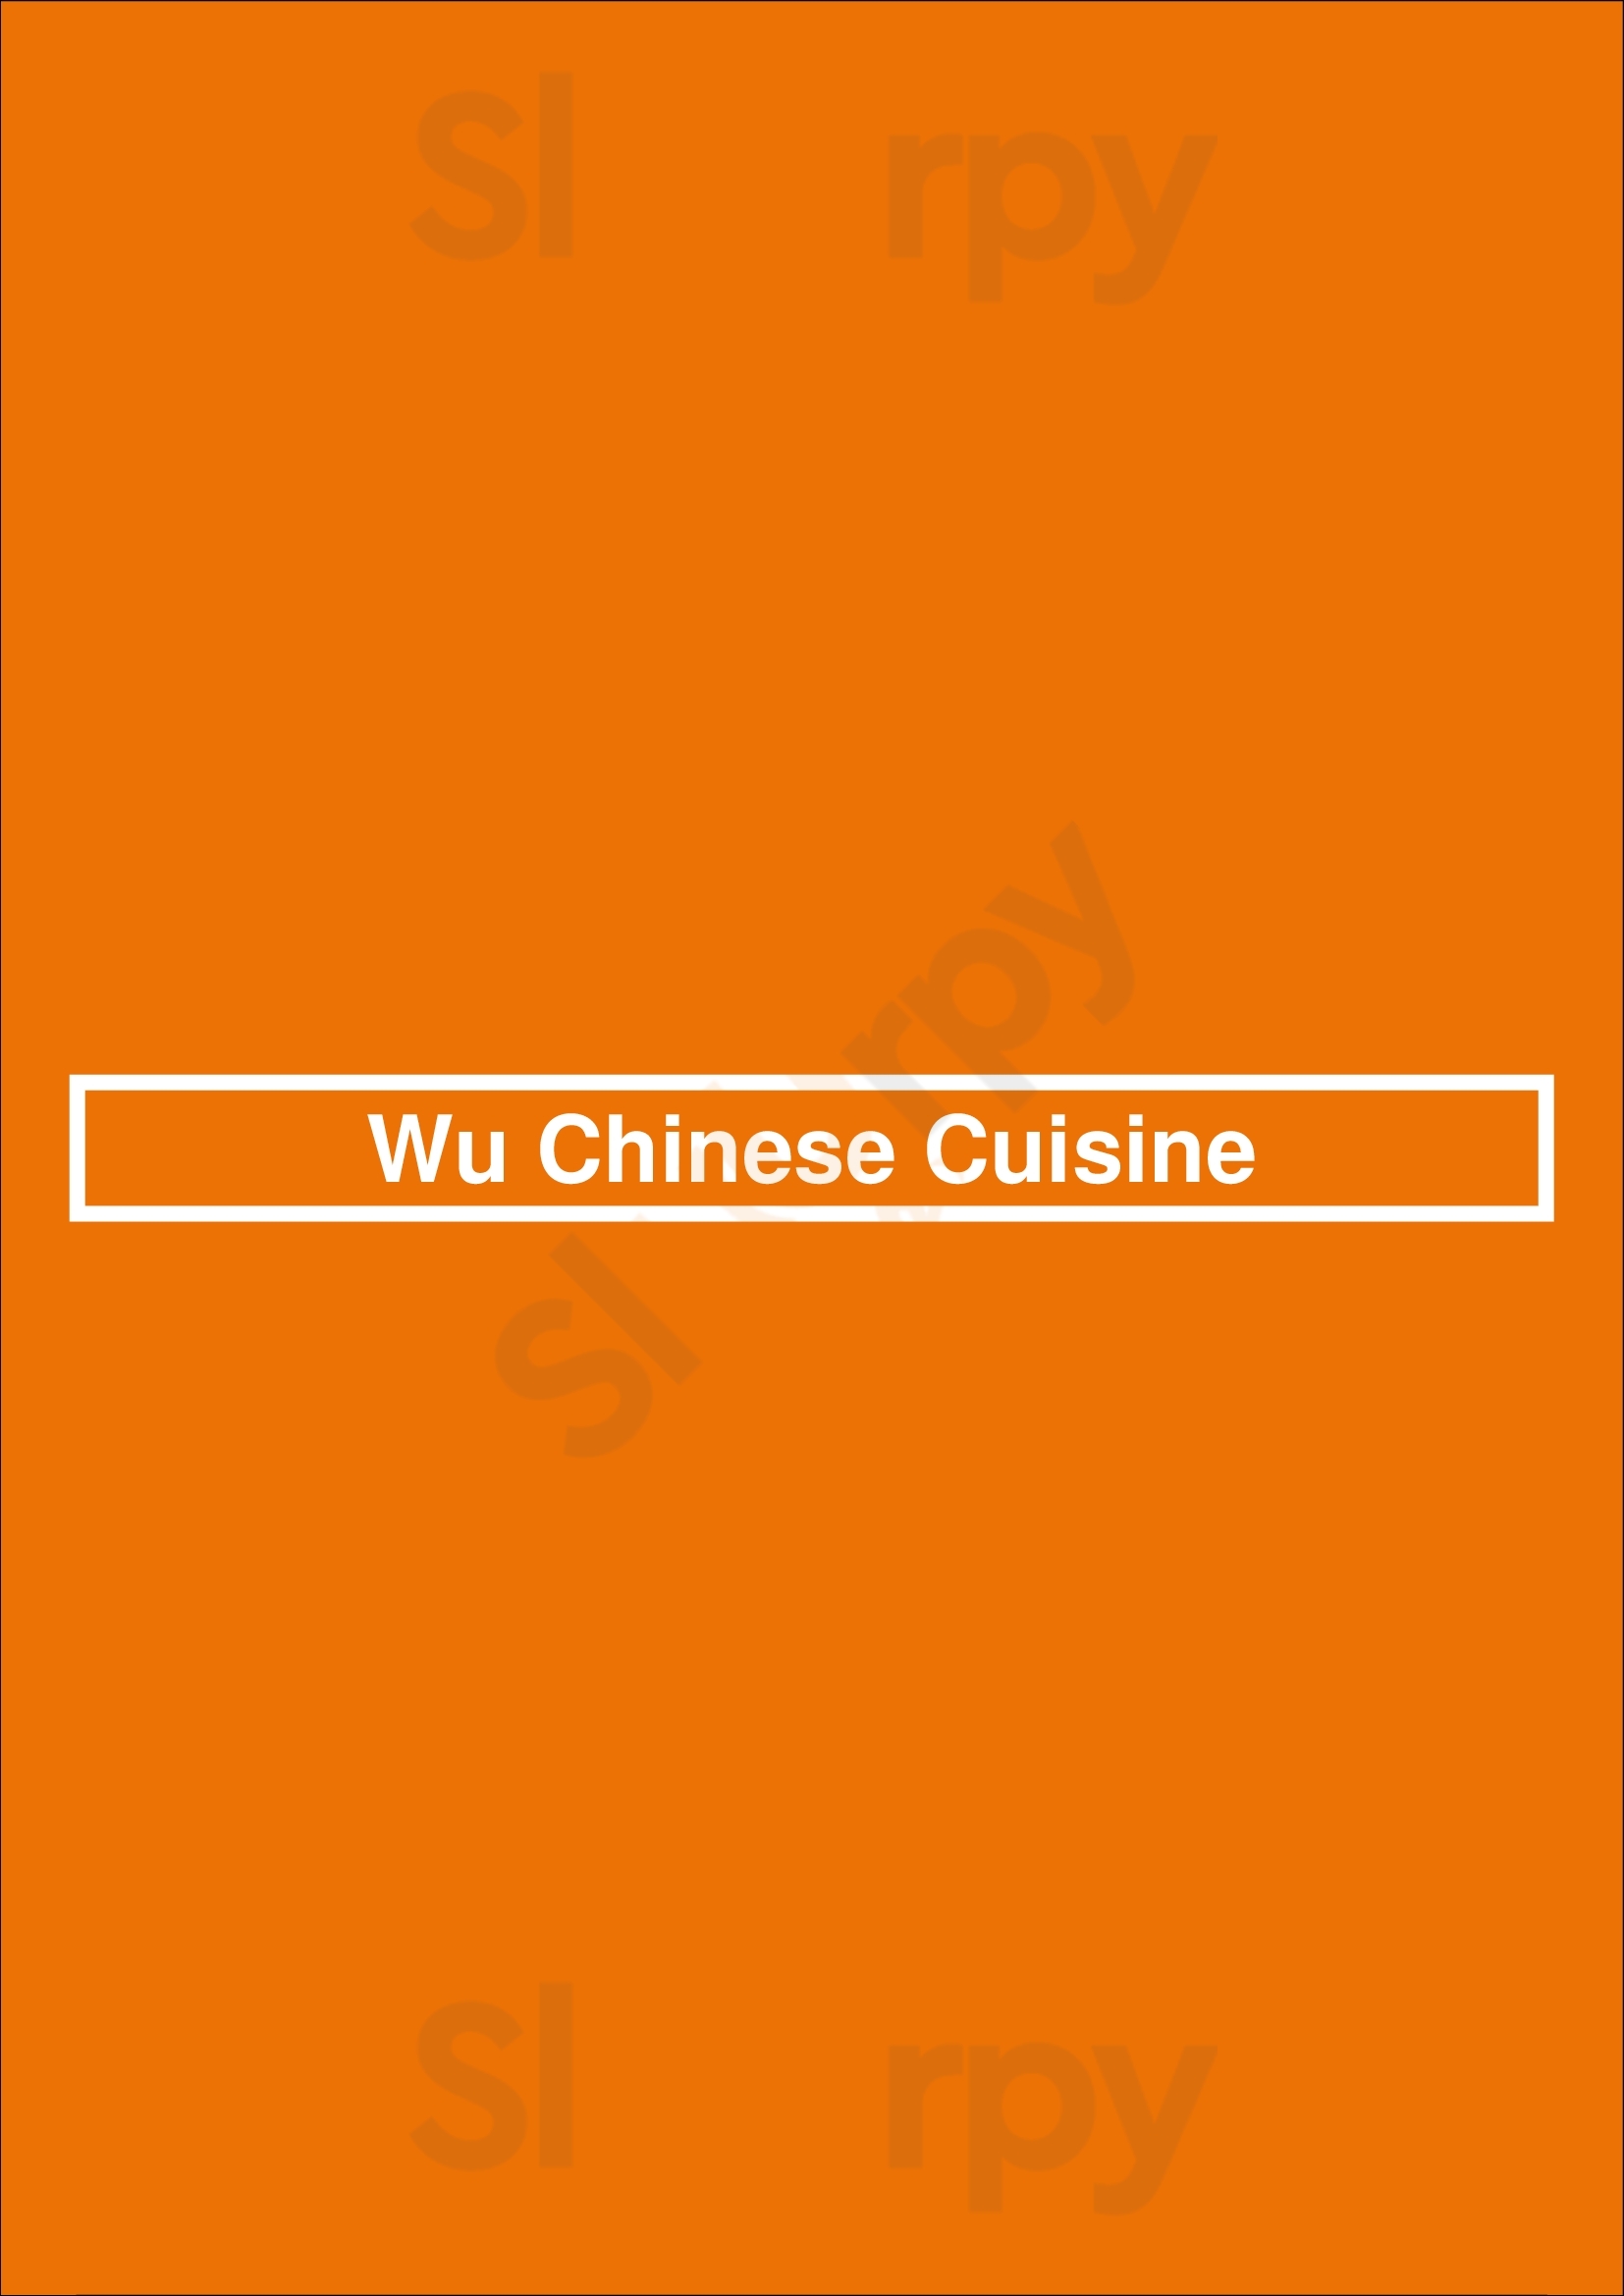 Wu Chinese Cuisine London Menu - 1